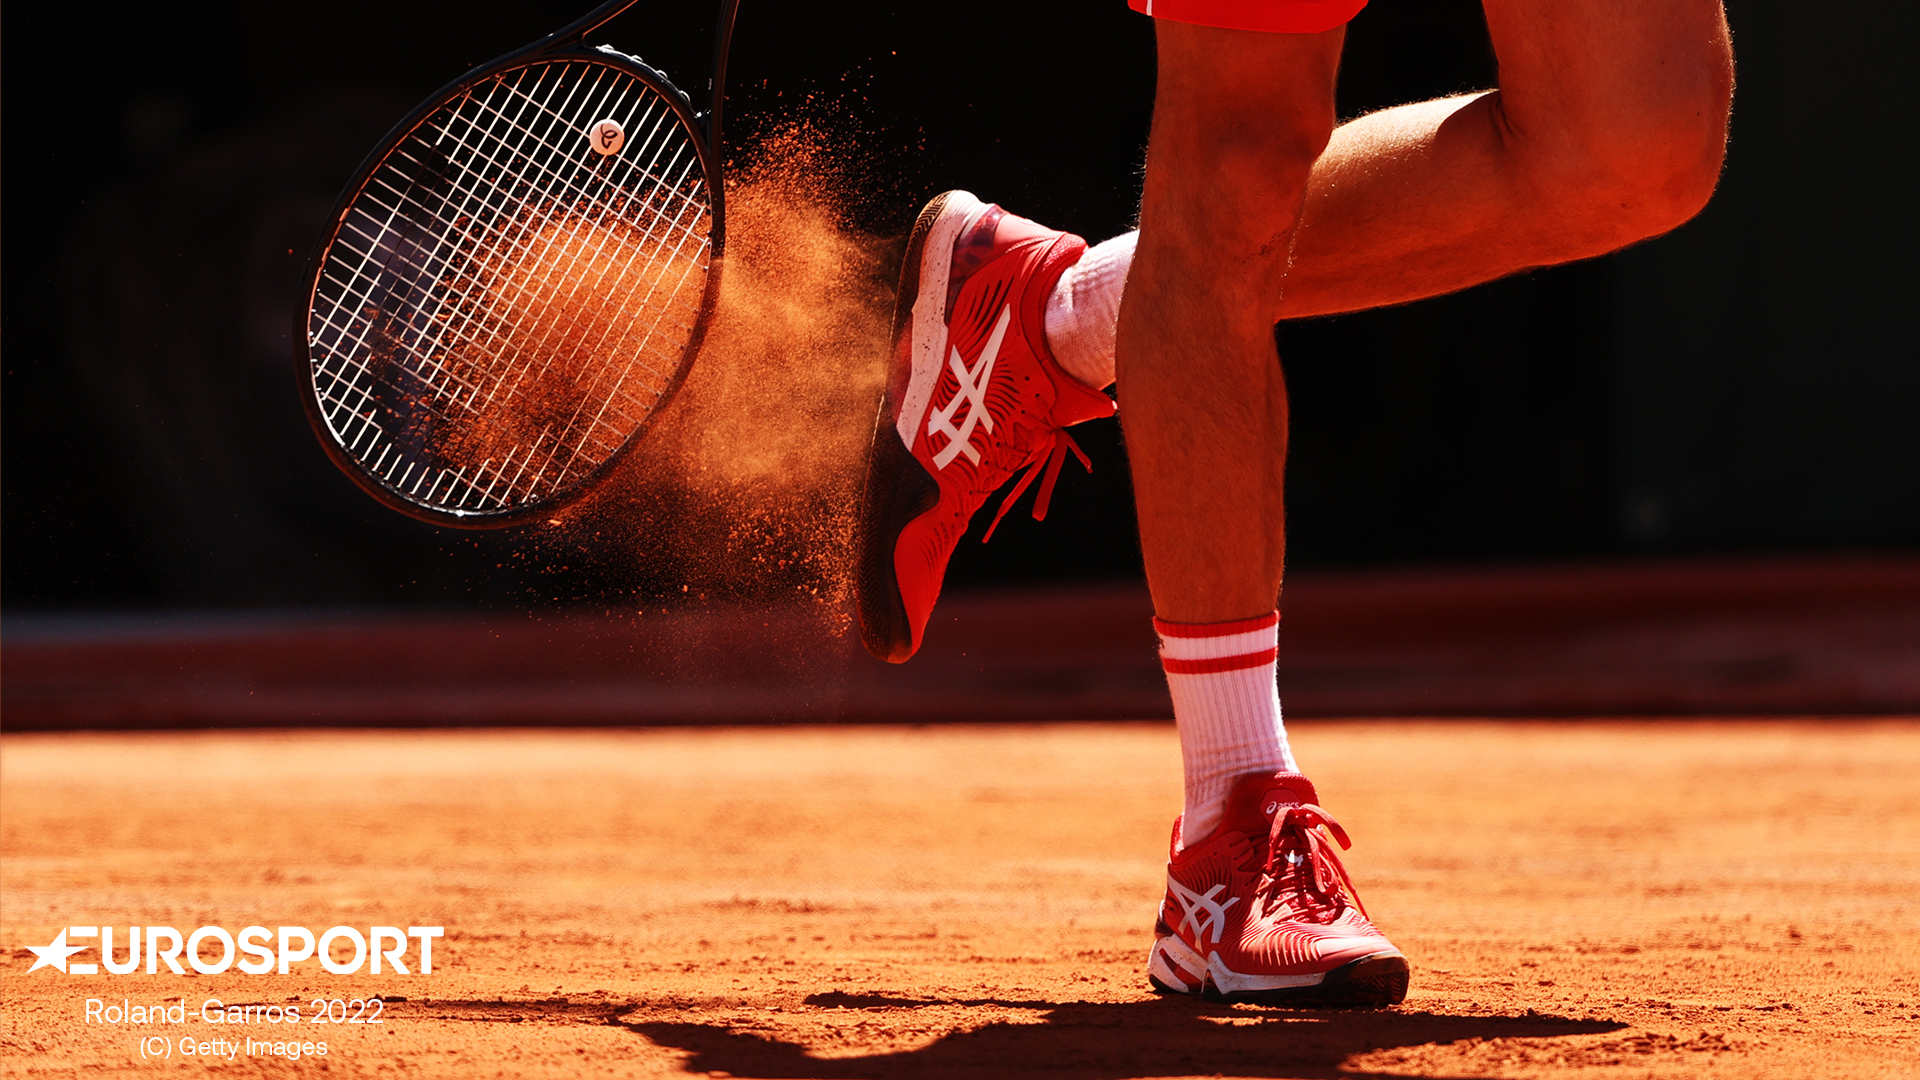 Brillanter Tennis-Genuss Eurosport zeigt Roland-Garros bei HD+ und simpliTV in UHD HDR Presseportal